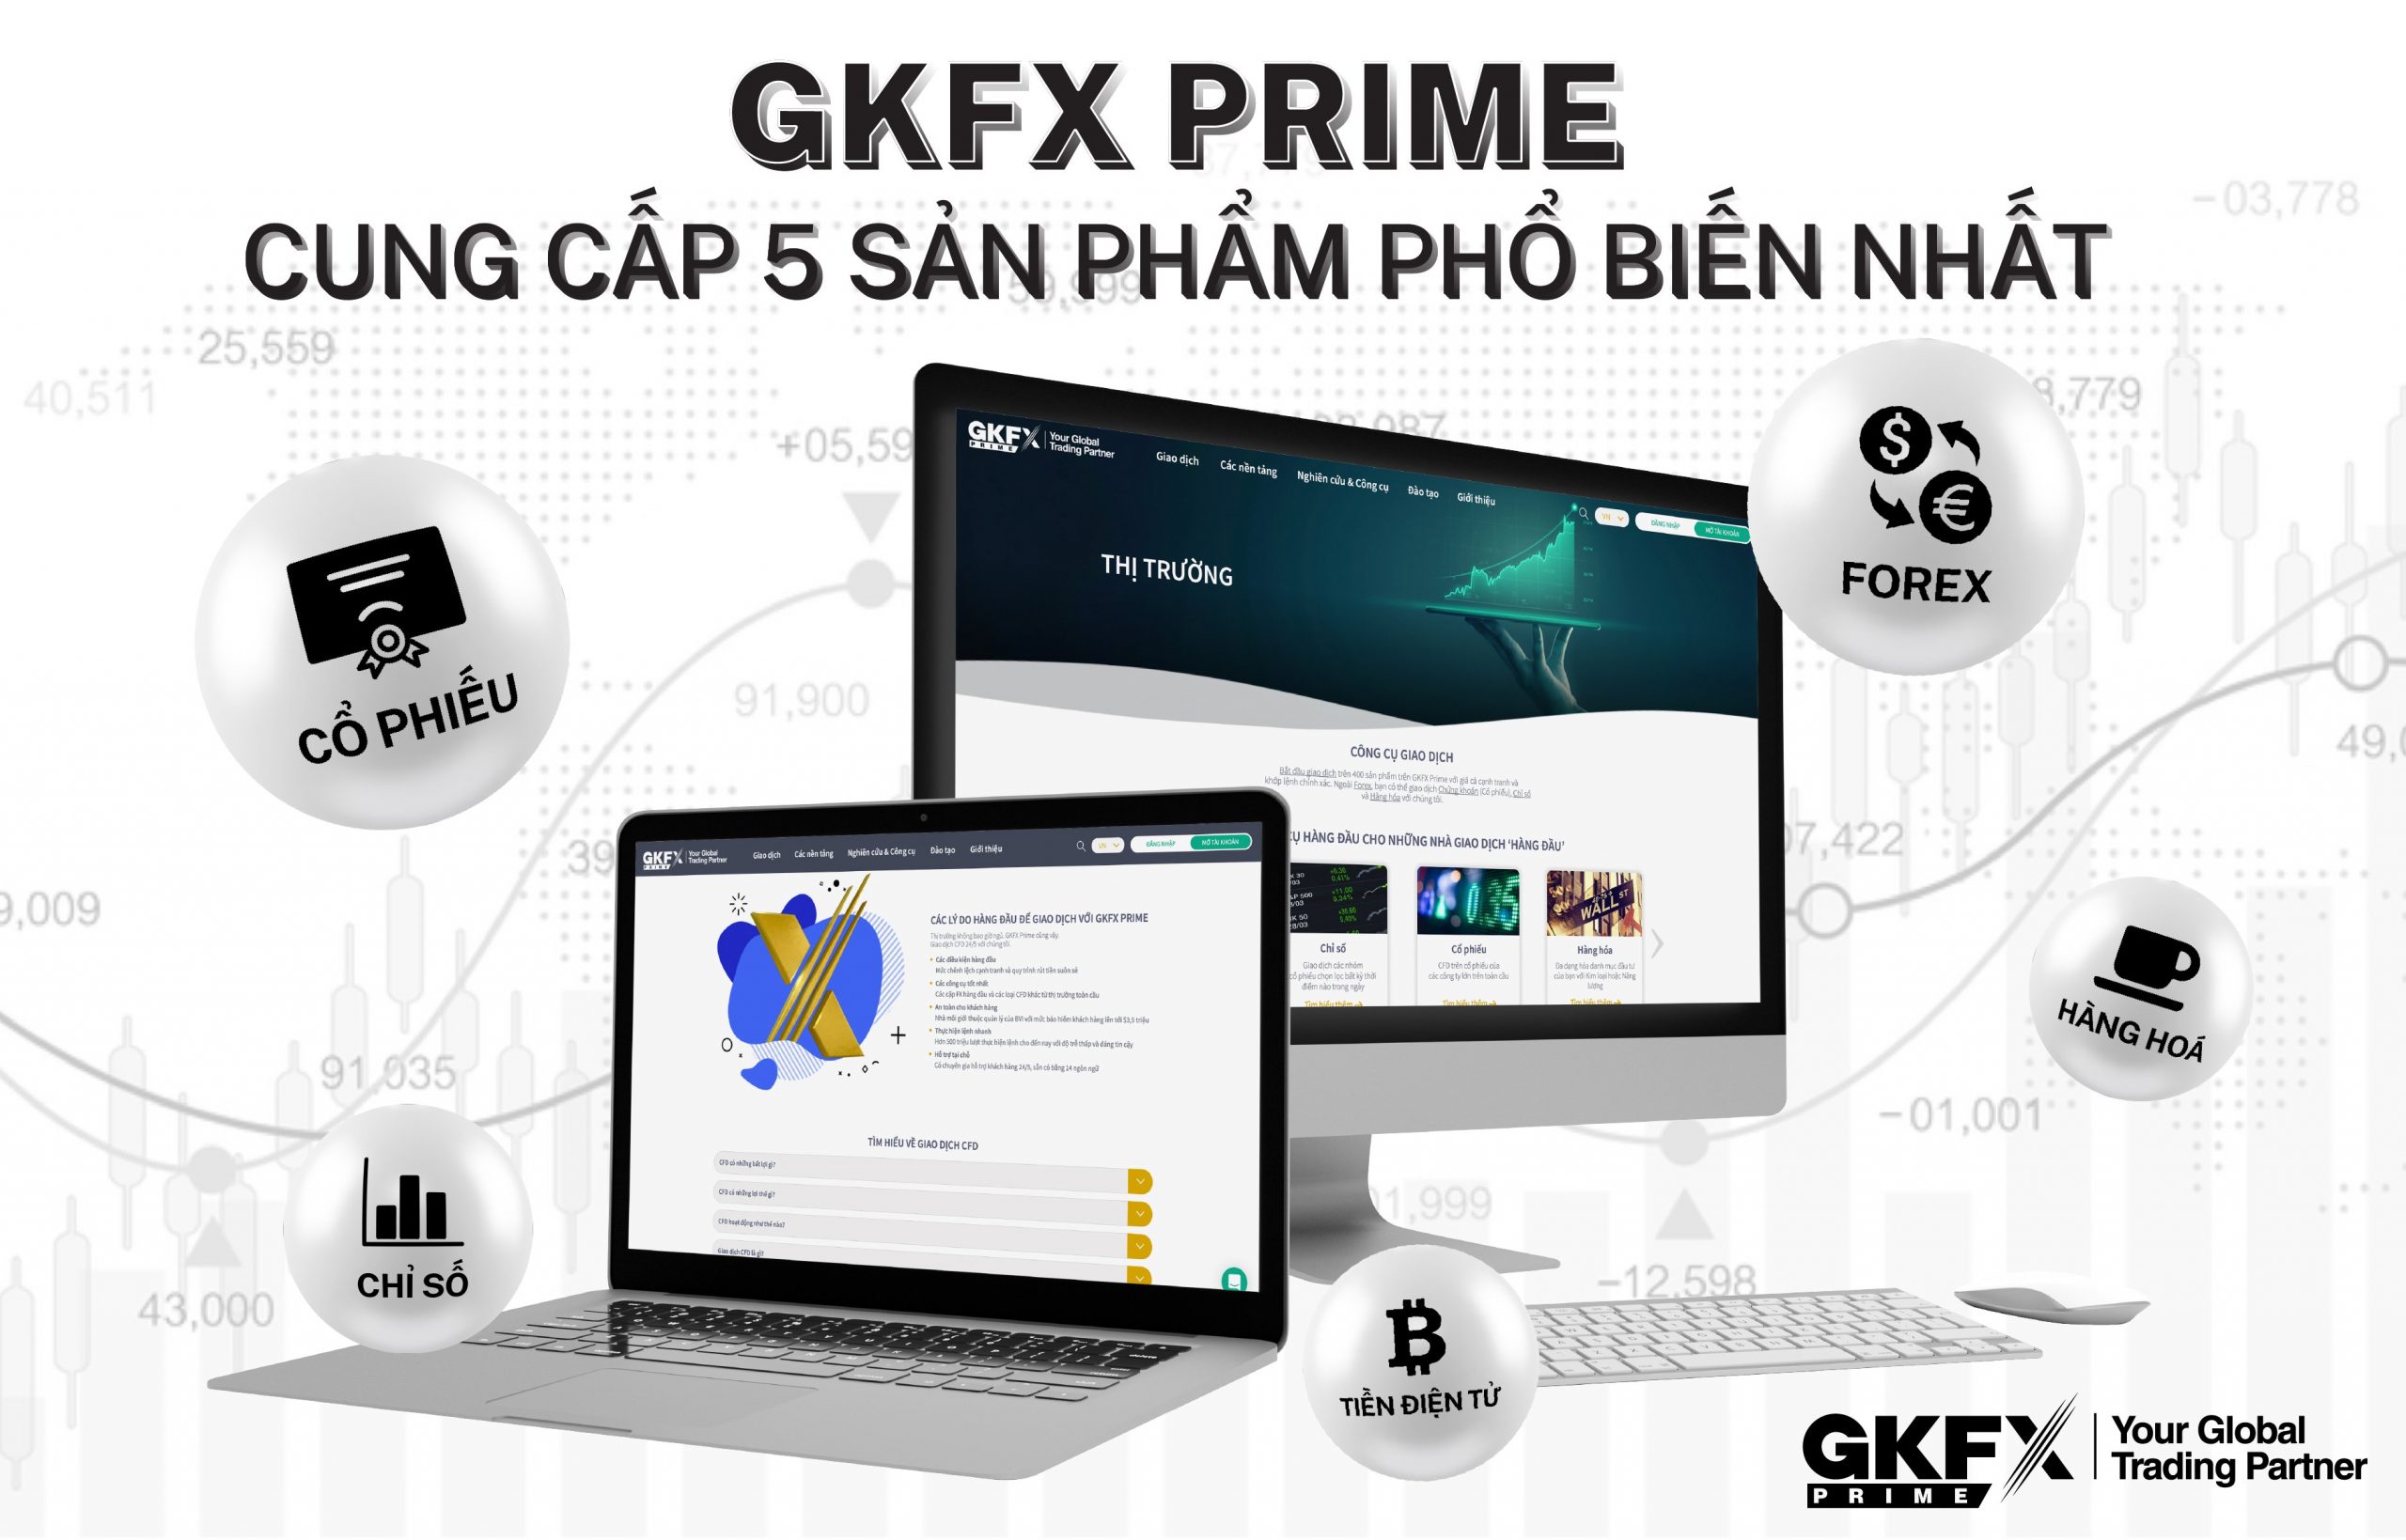 GKFX Prime - Sàn Forex Nạp Rút Nhanh Nhất Việt Nam - vtradetop.com